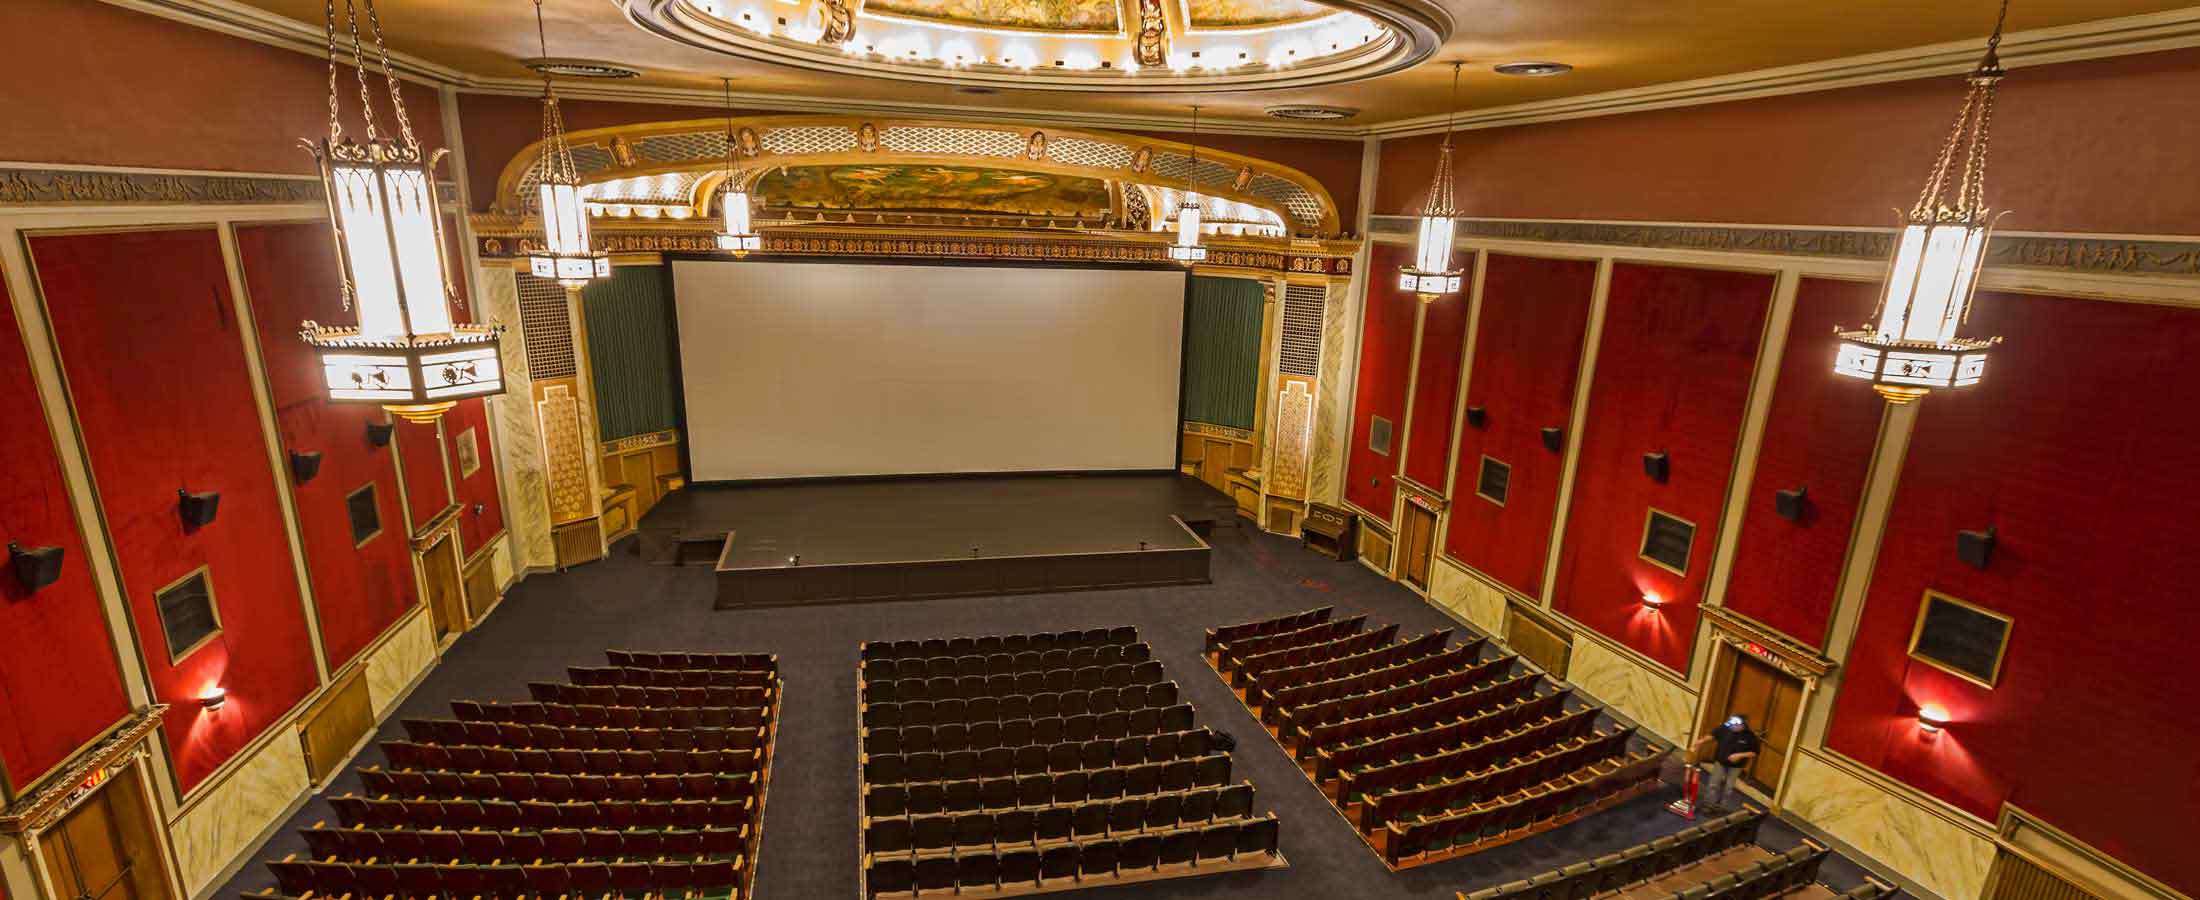 North Park Theatre - Buffalo's Finest Movie Theatre